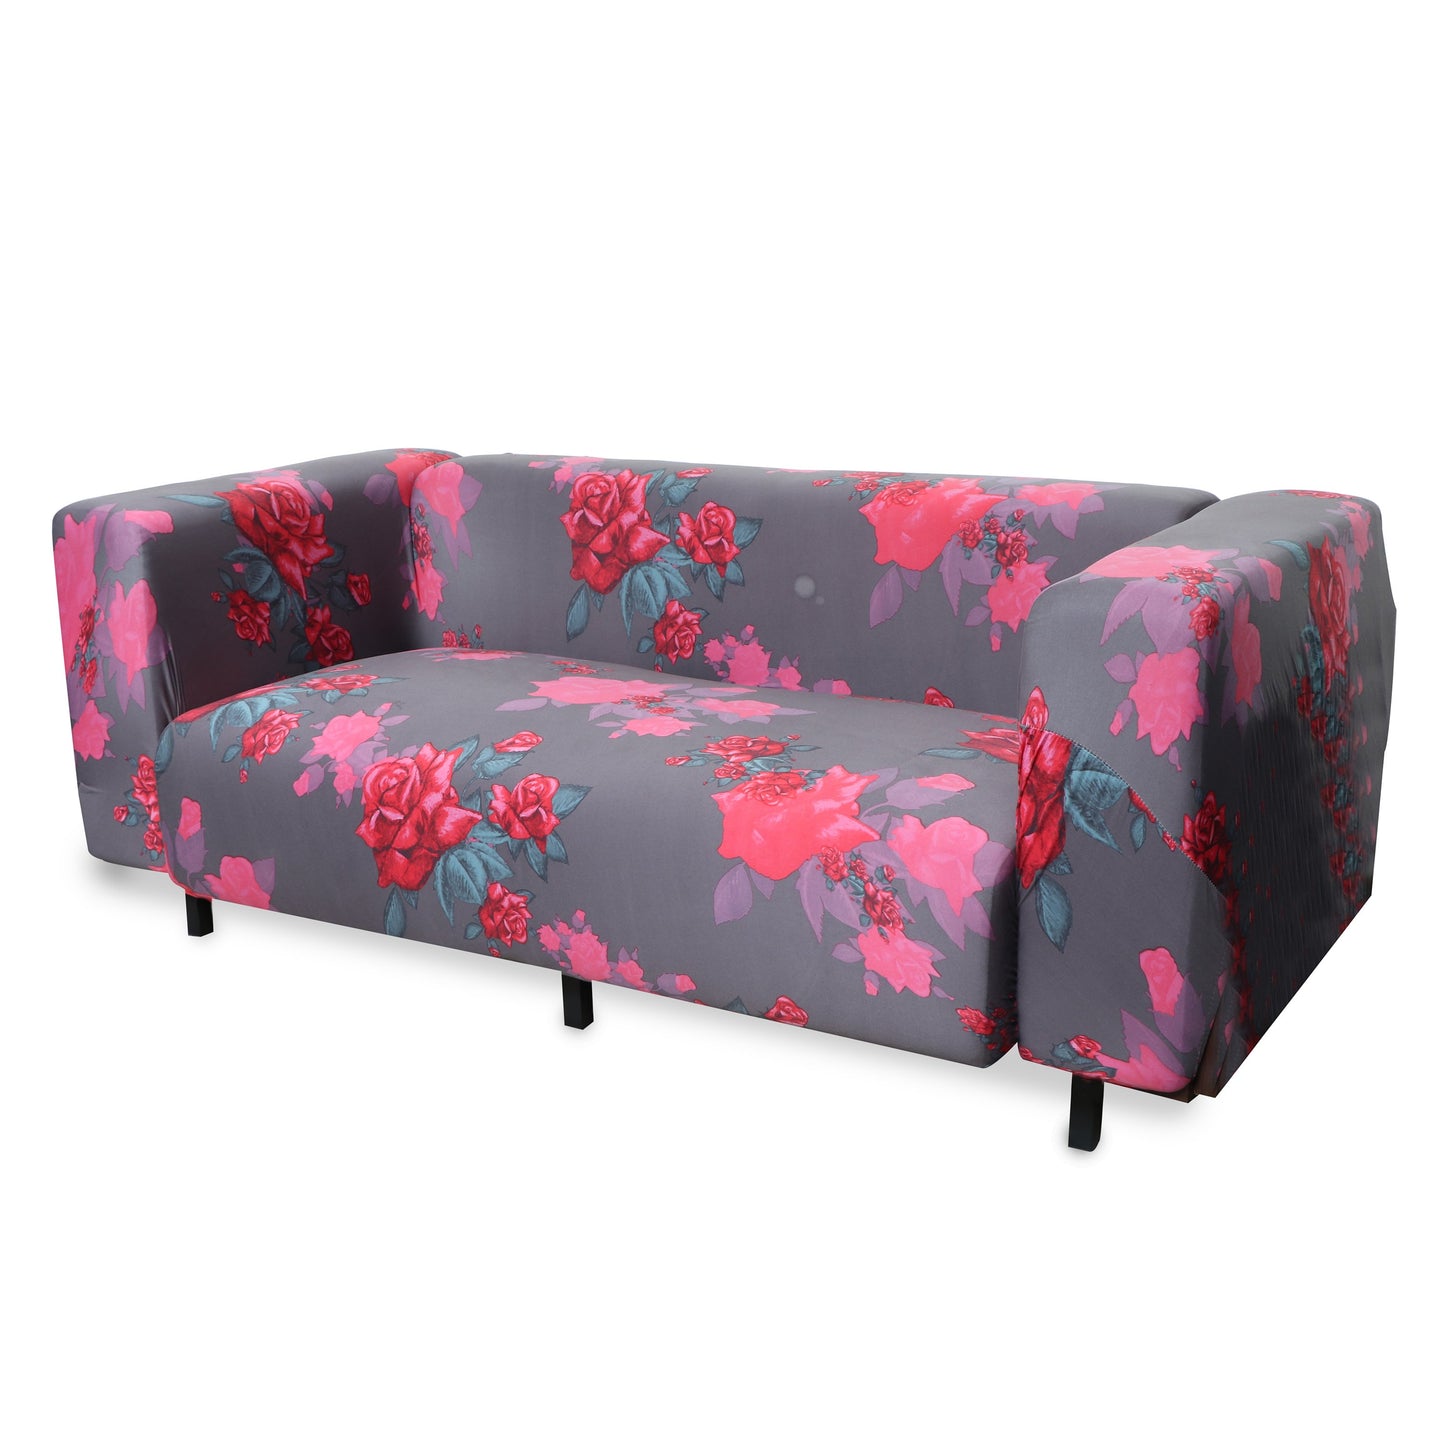 Printed Sofa Slipcover - Rose Dark Grey